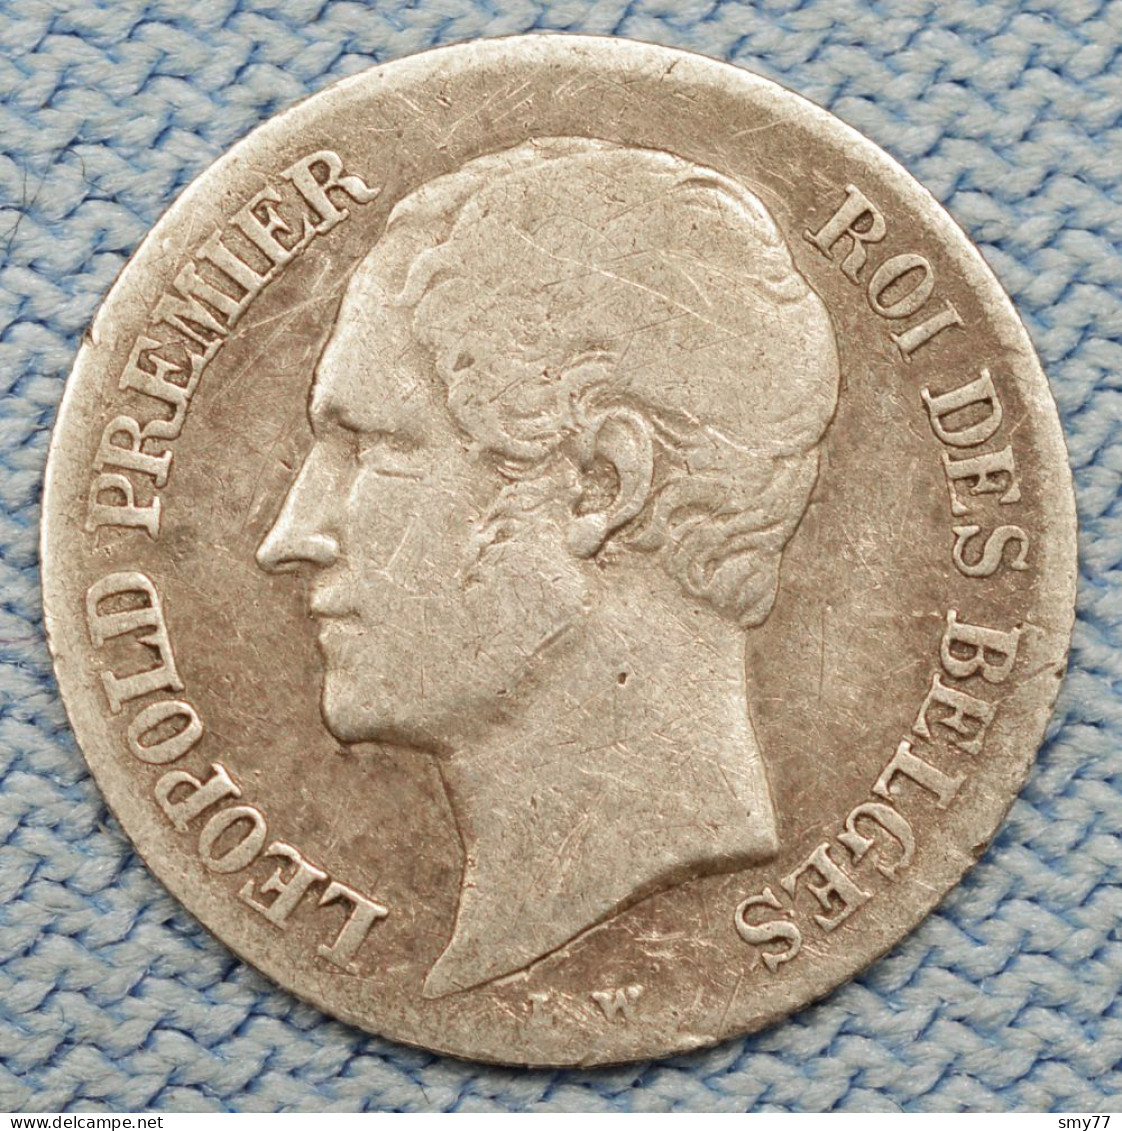 Belgique / Belgium • 20 Centimes 1853 • [24-629] - 20 Cents